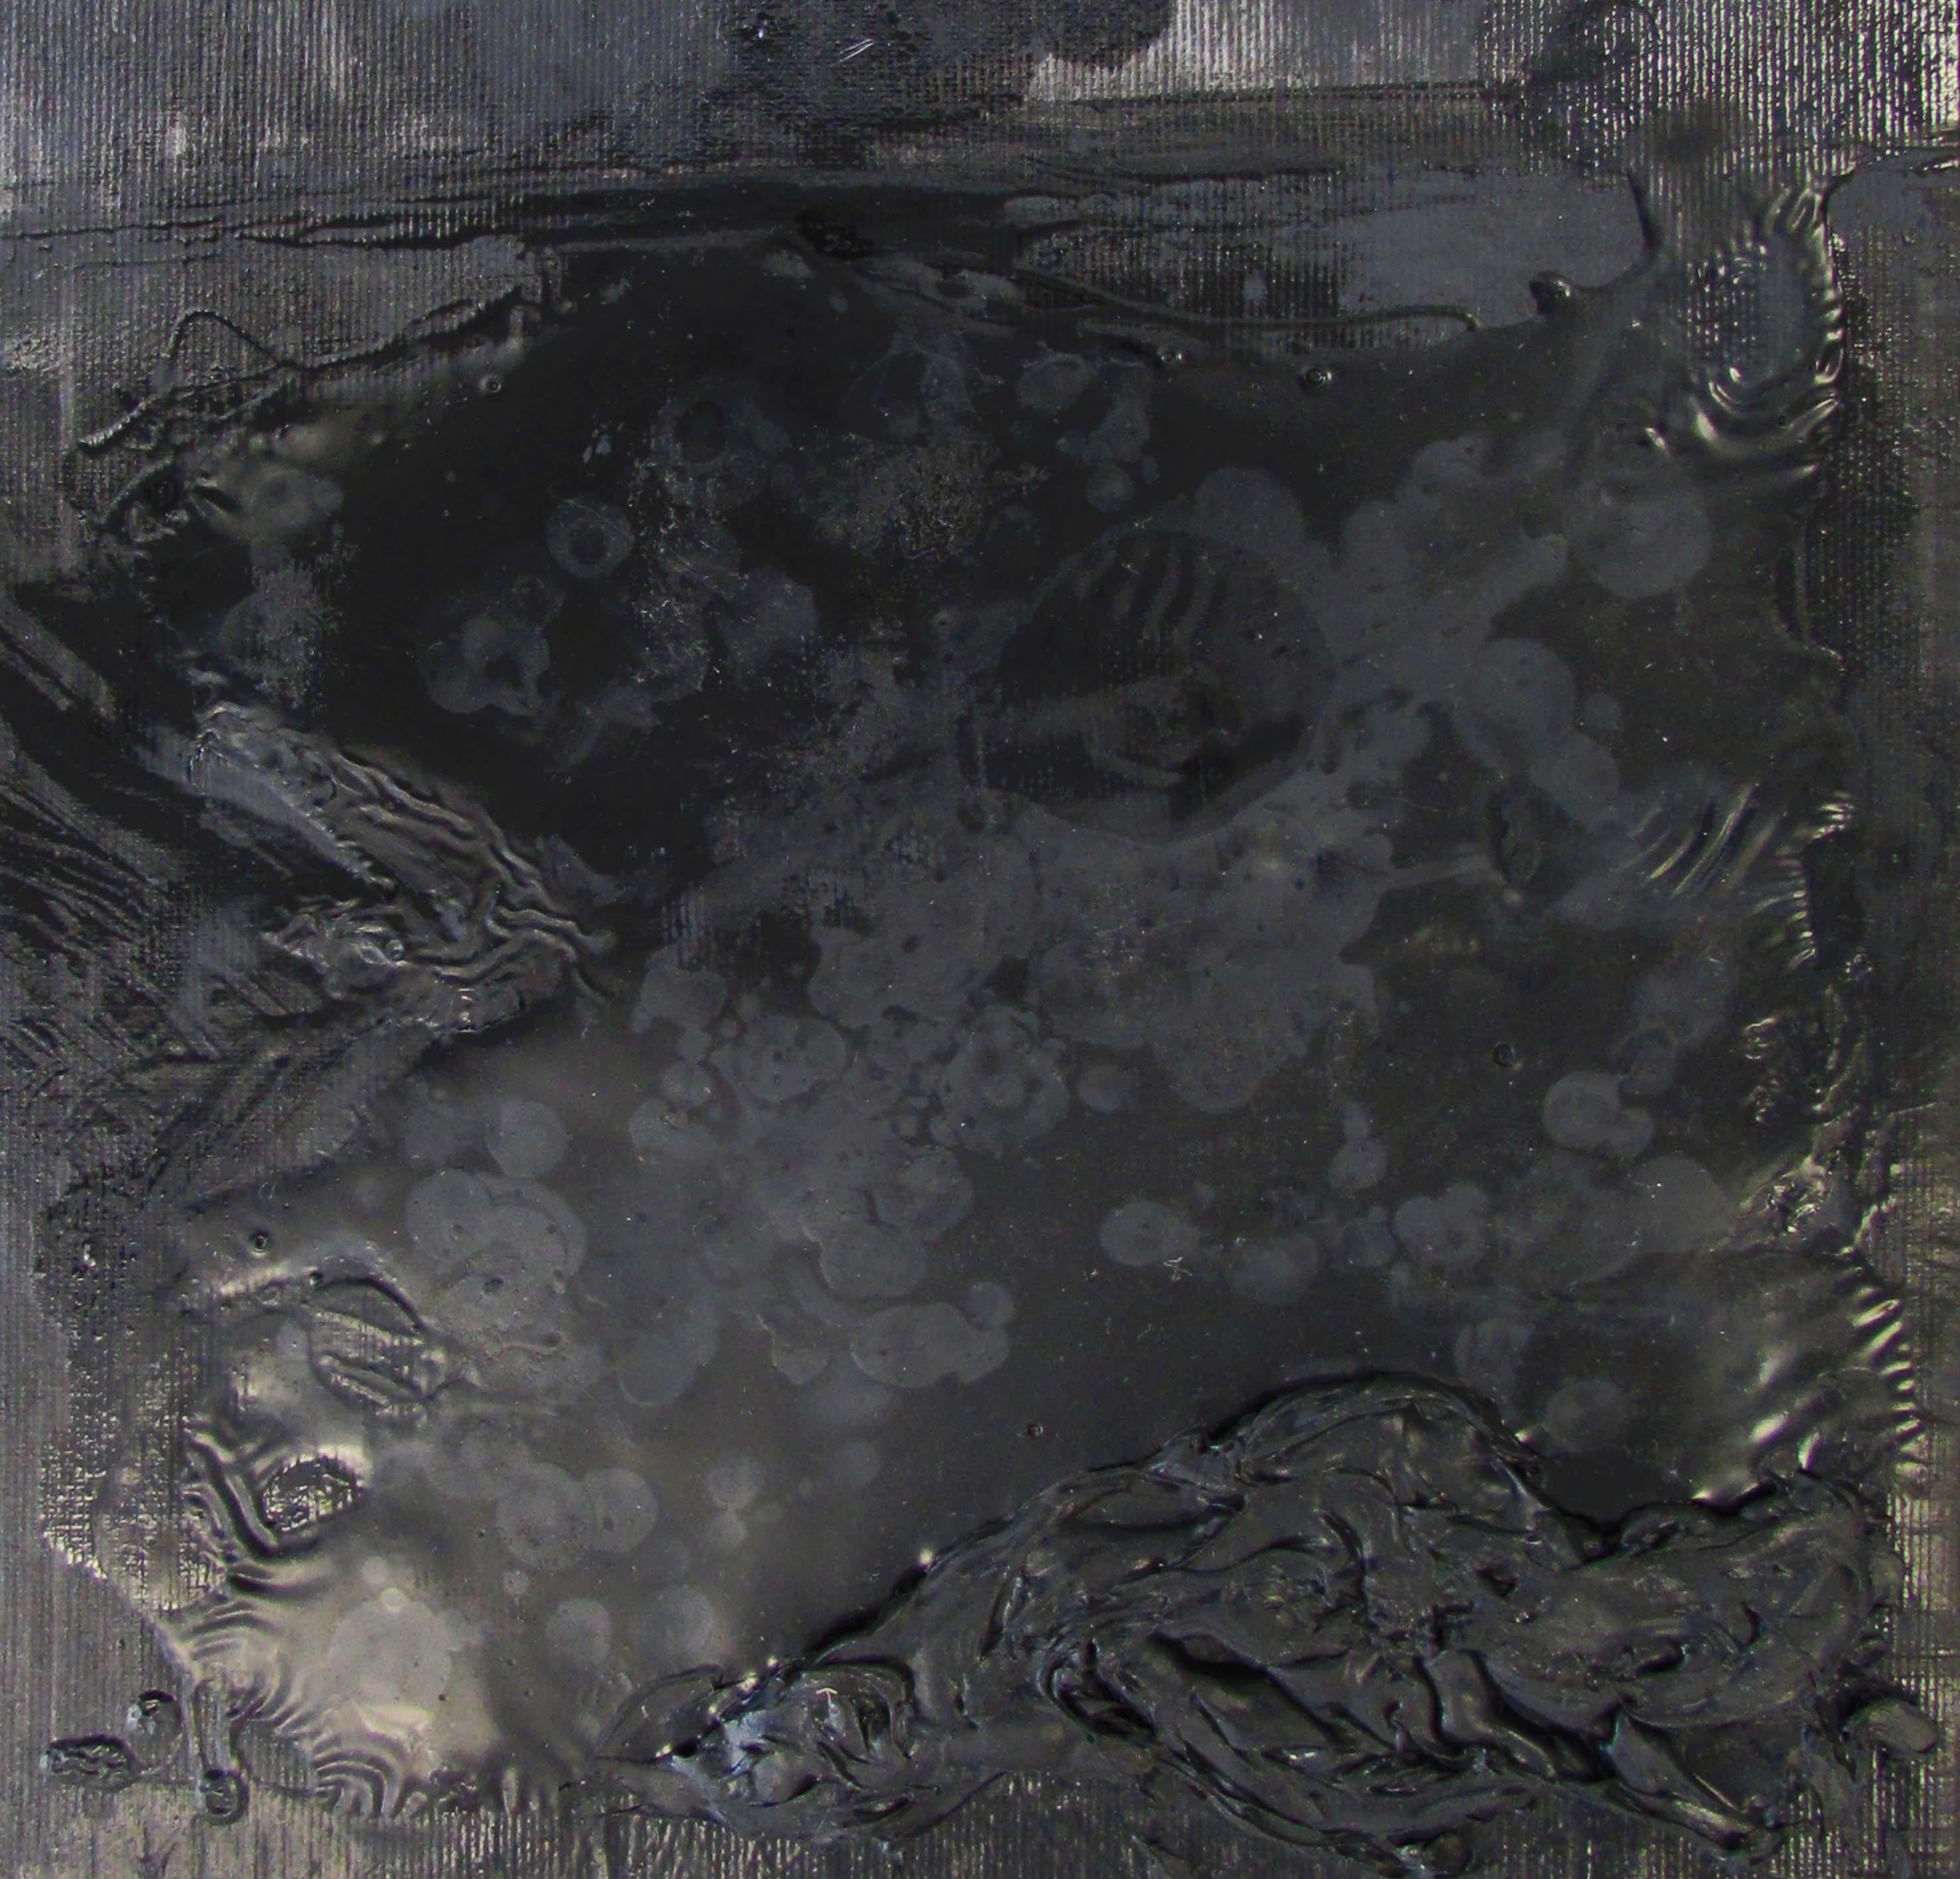 Sans titre 03 [Dissection de l'inconnu 03], 2015 - 2016
Technique mixte : peinture à l'huile, adhésif sur toile montée sur OSB
12.6 × 9.1 × 0.4 in
32 × 23 × 1 cm
(Signé au verso)

L'œuvre de Zsolt Berszán parle de répulsion et de fascination et, en